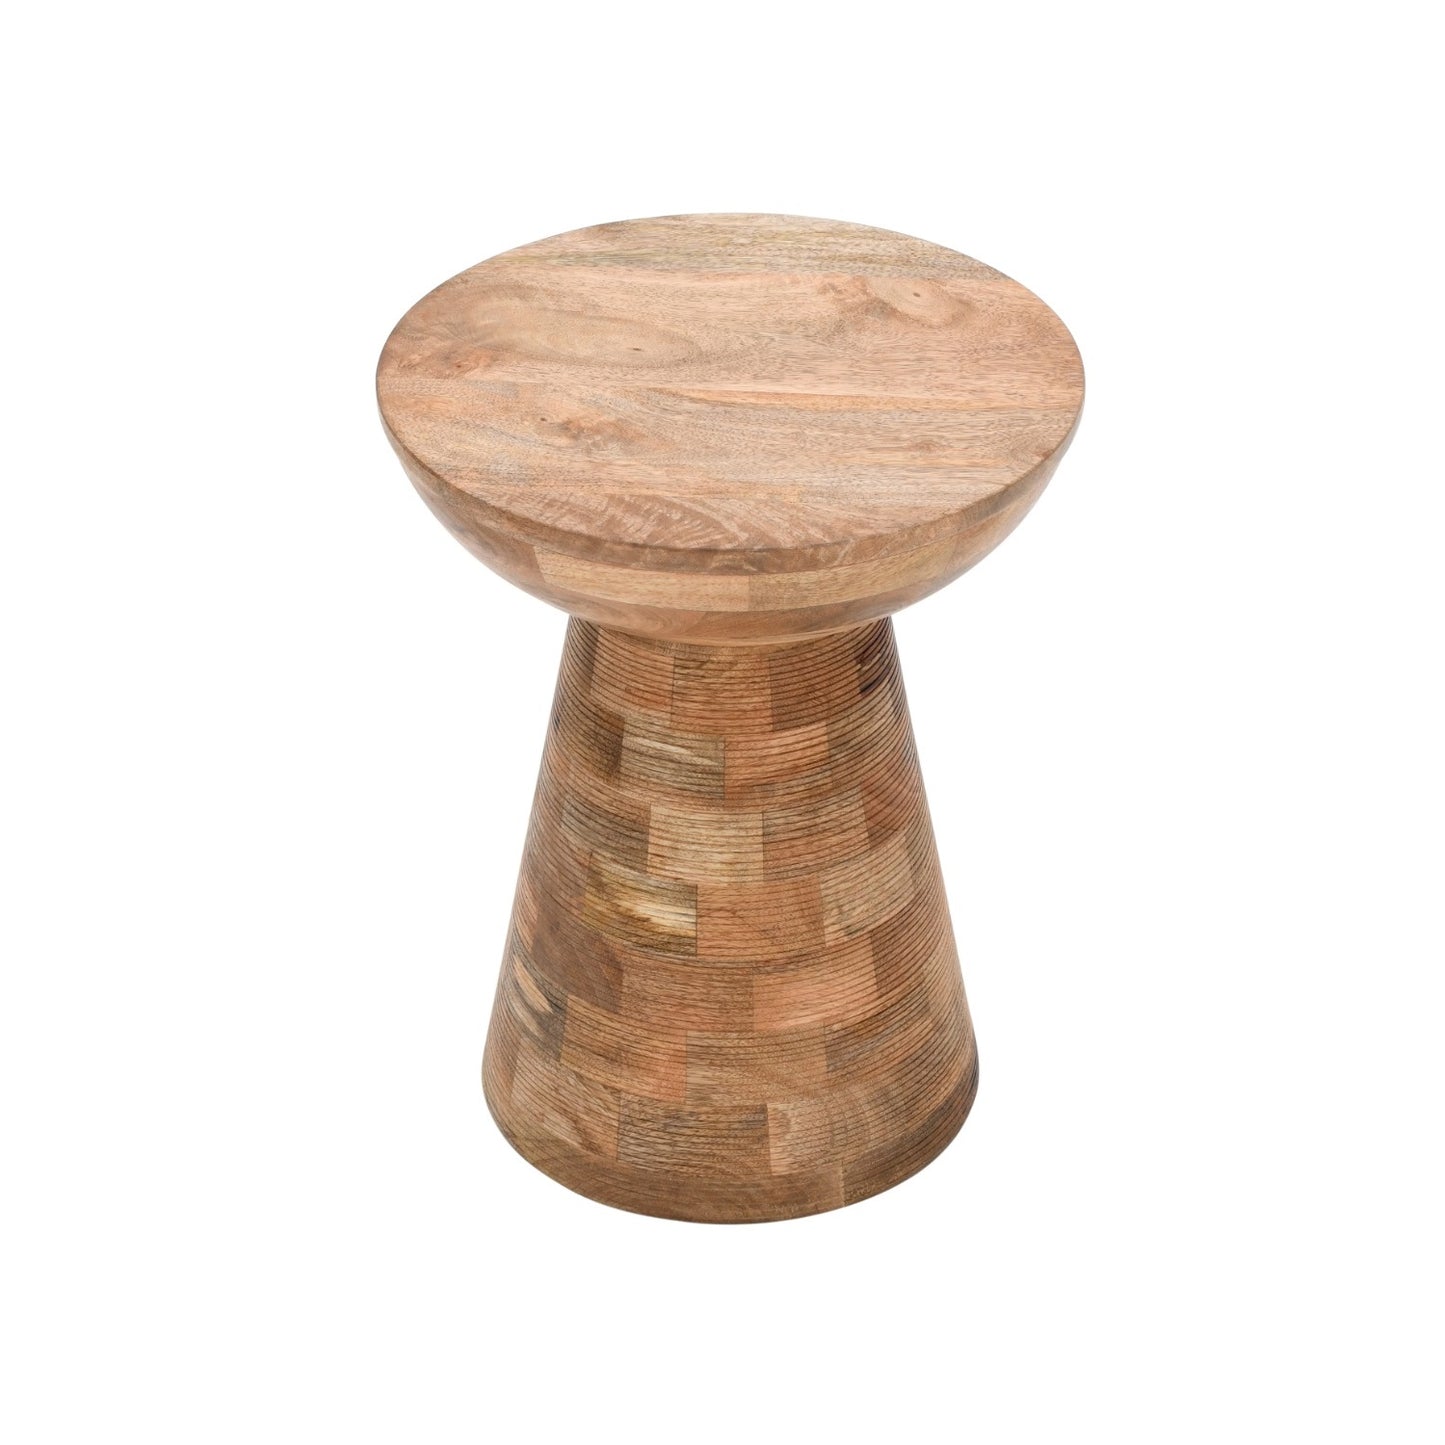 Solid Wood Round Side Table Mushroom Style, elegant and Versatile